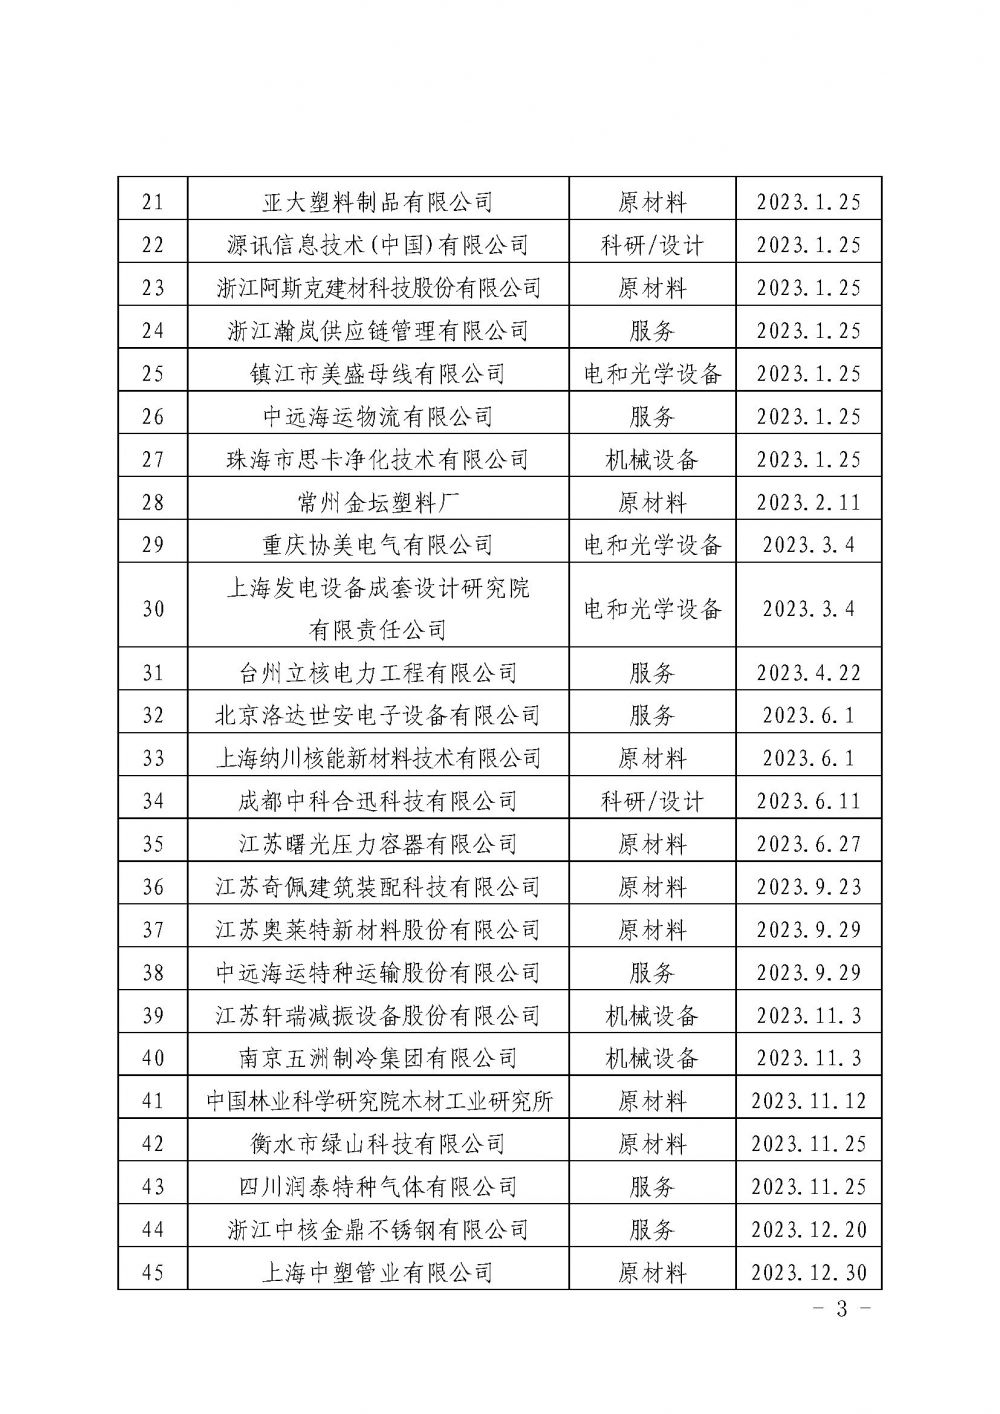 关于发布中国核能行业协会核能行业第十二批合格供应商名录的公告_页面_3.jpg